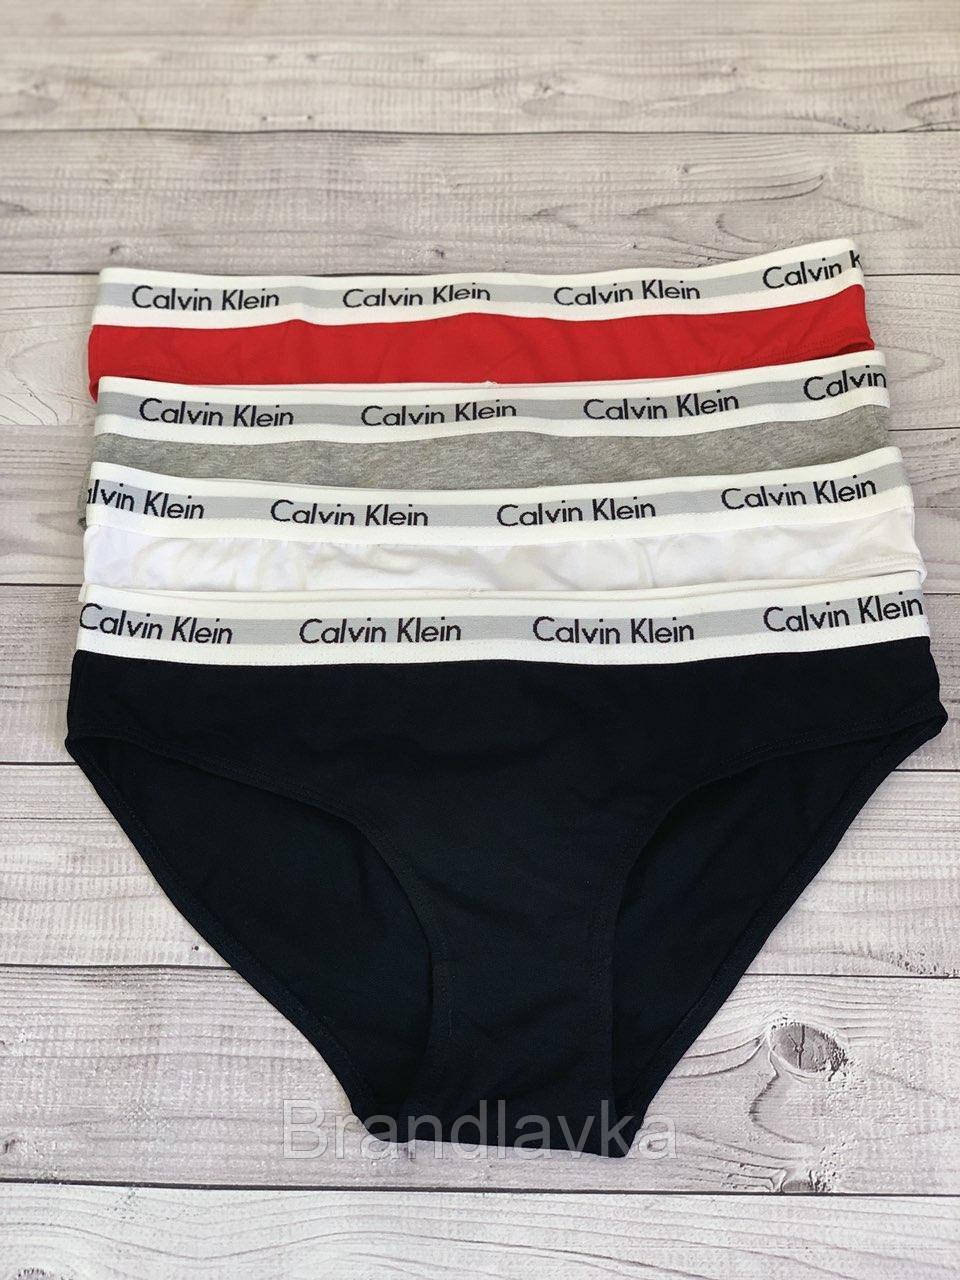 Женский комплект белья Calvin Klein Radiant женские трусики слипы Набо